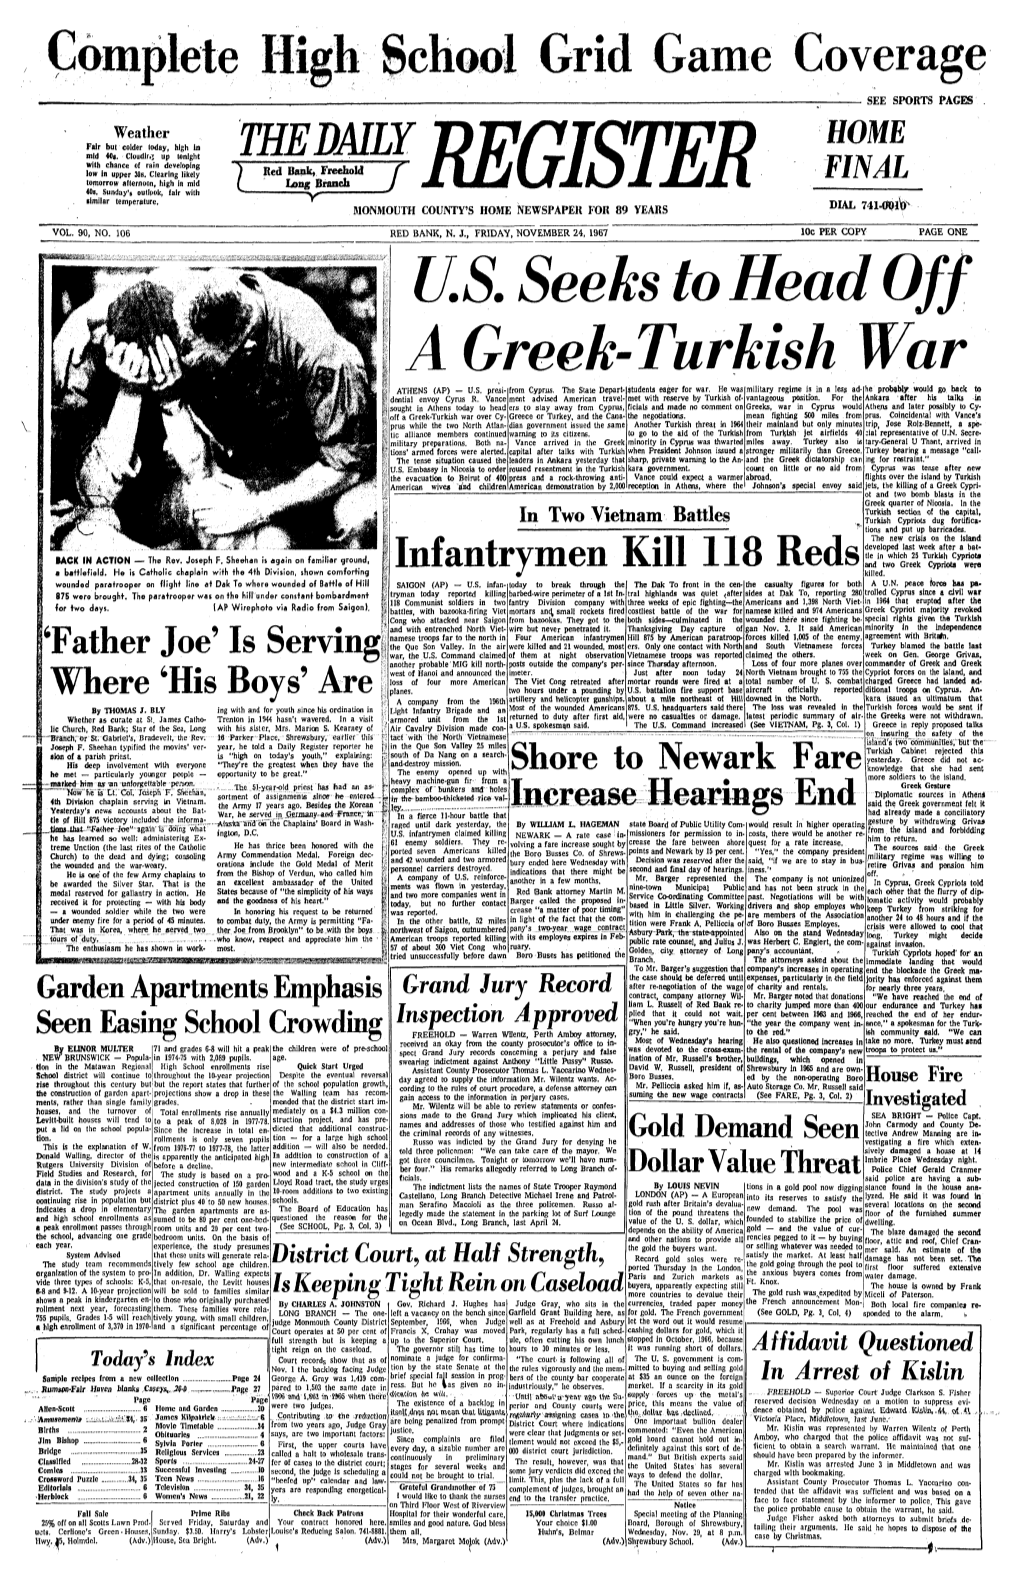 U.S. Seeks to Head Off a Greek-Turkish War ATHENS (AP) - U.S